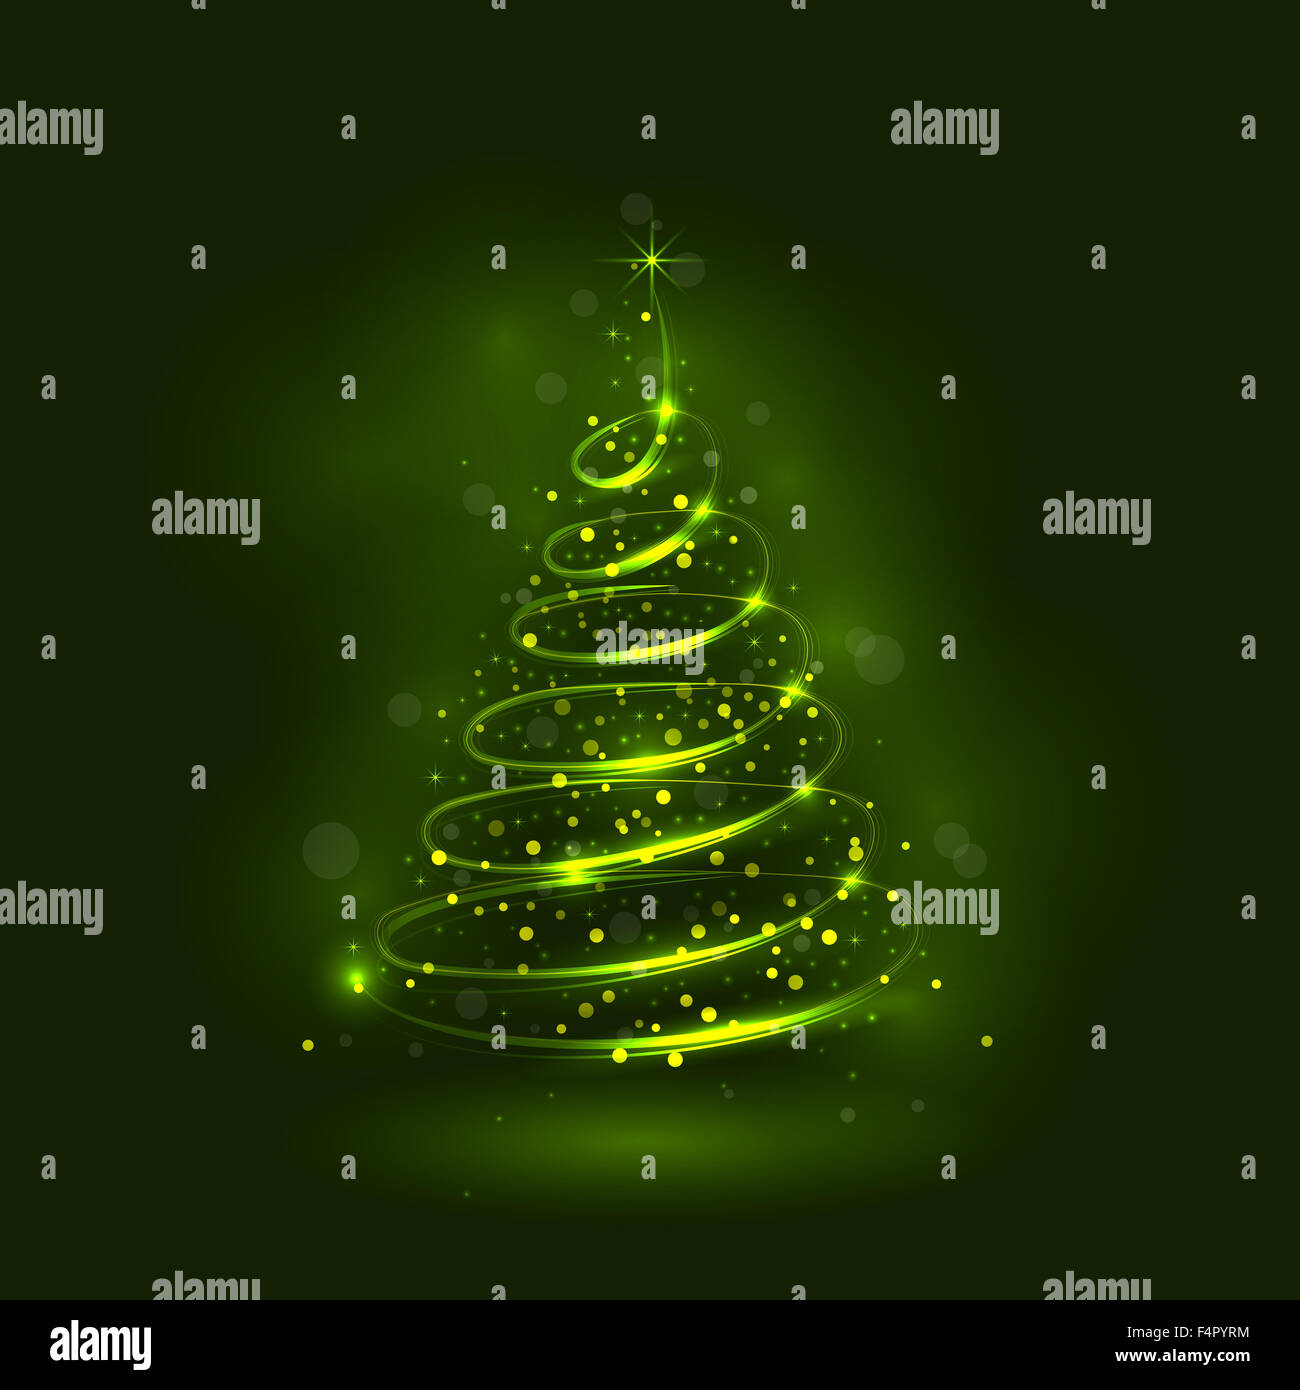 Shining albero di natale, la magia albero di natale, lucido albero di natale.Buon Natale e felice anno nuovo sfondo astratto. Foto Stock